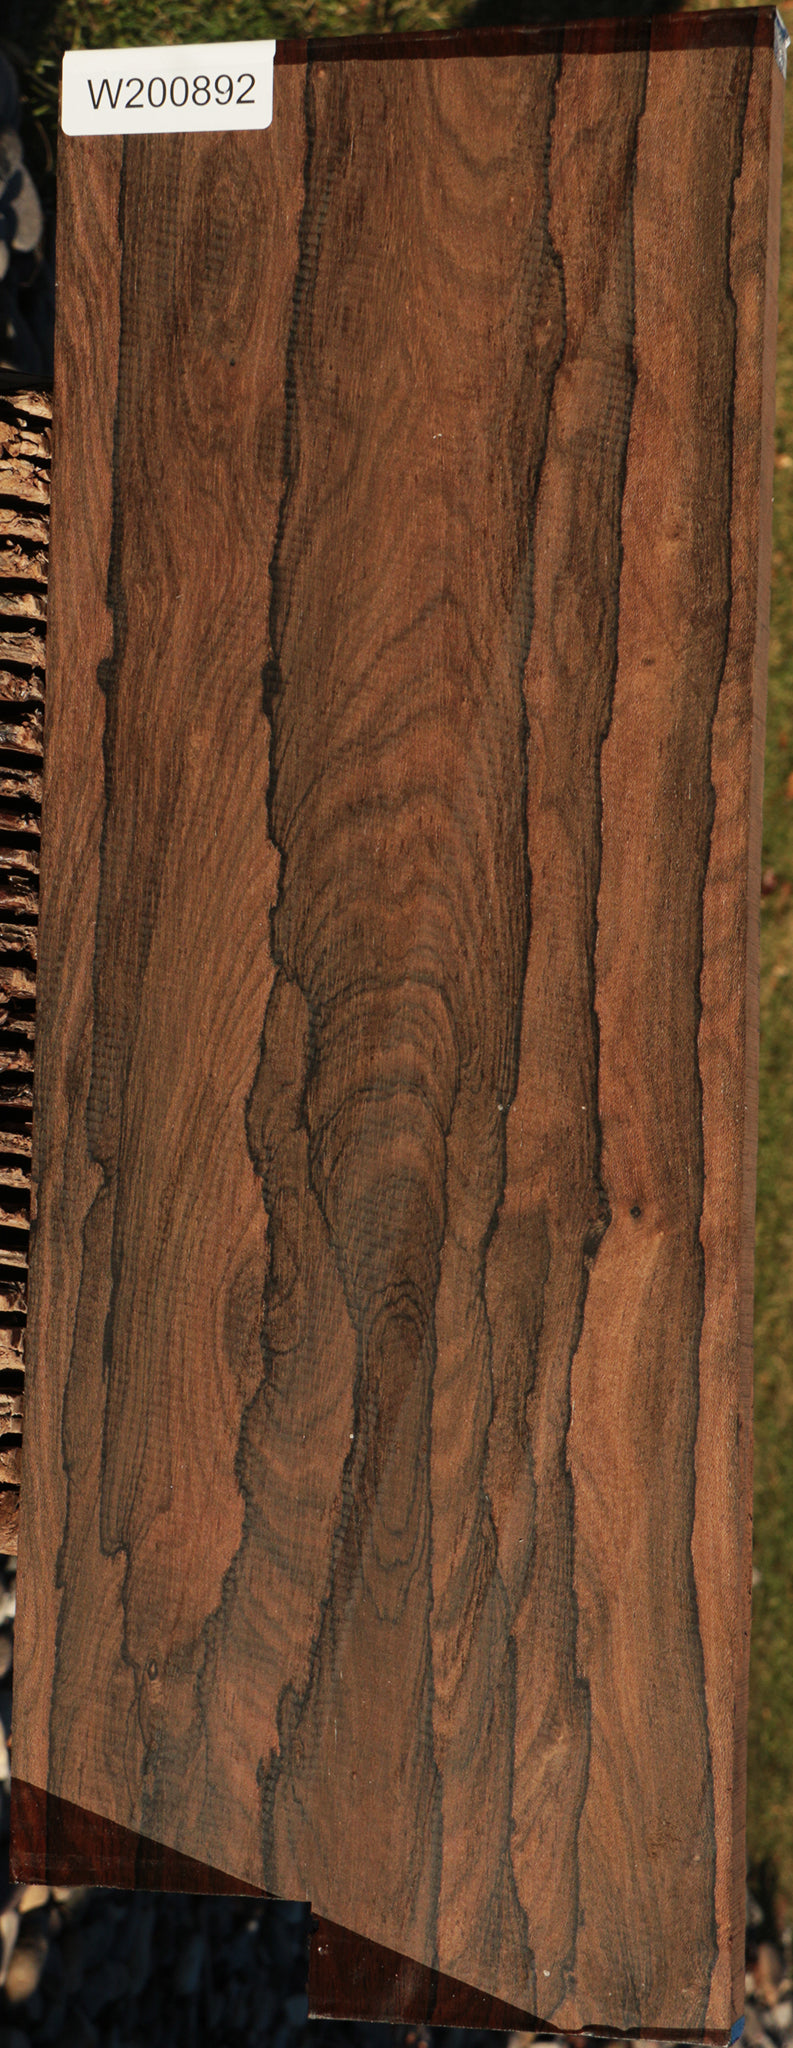 Ziricote Instrument Lumber